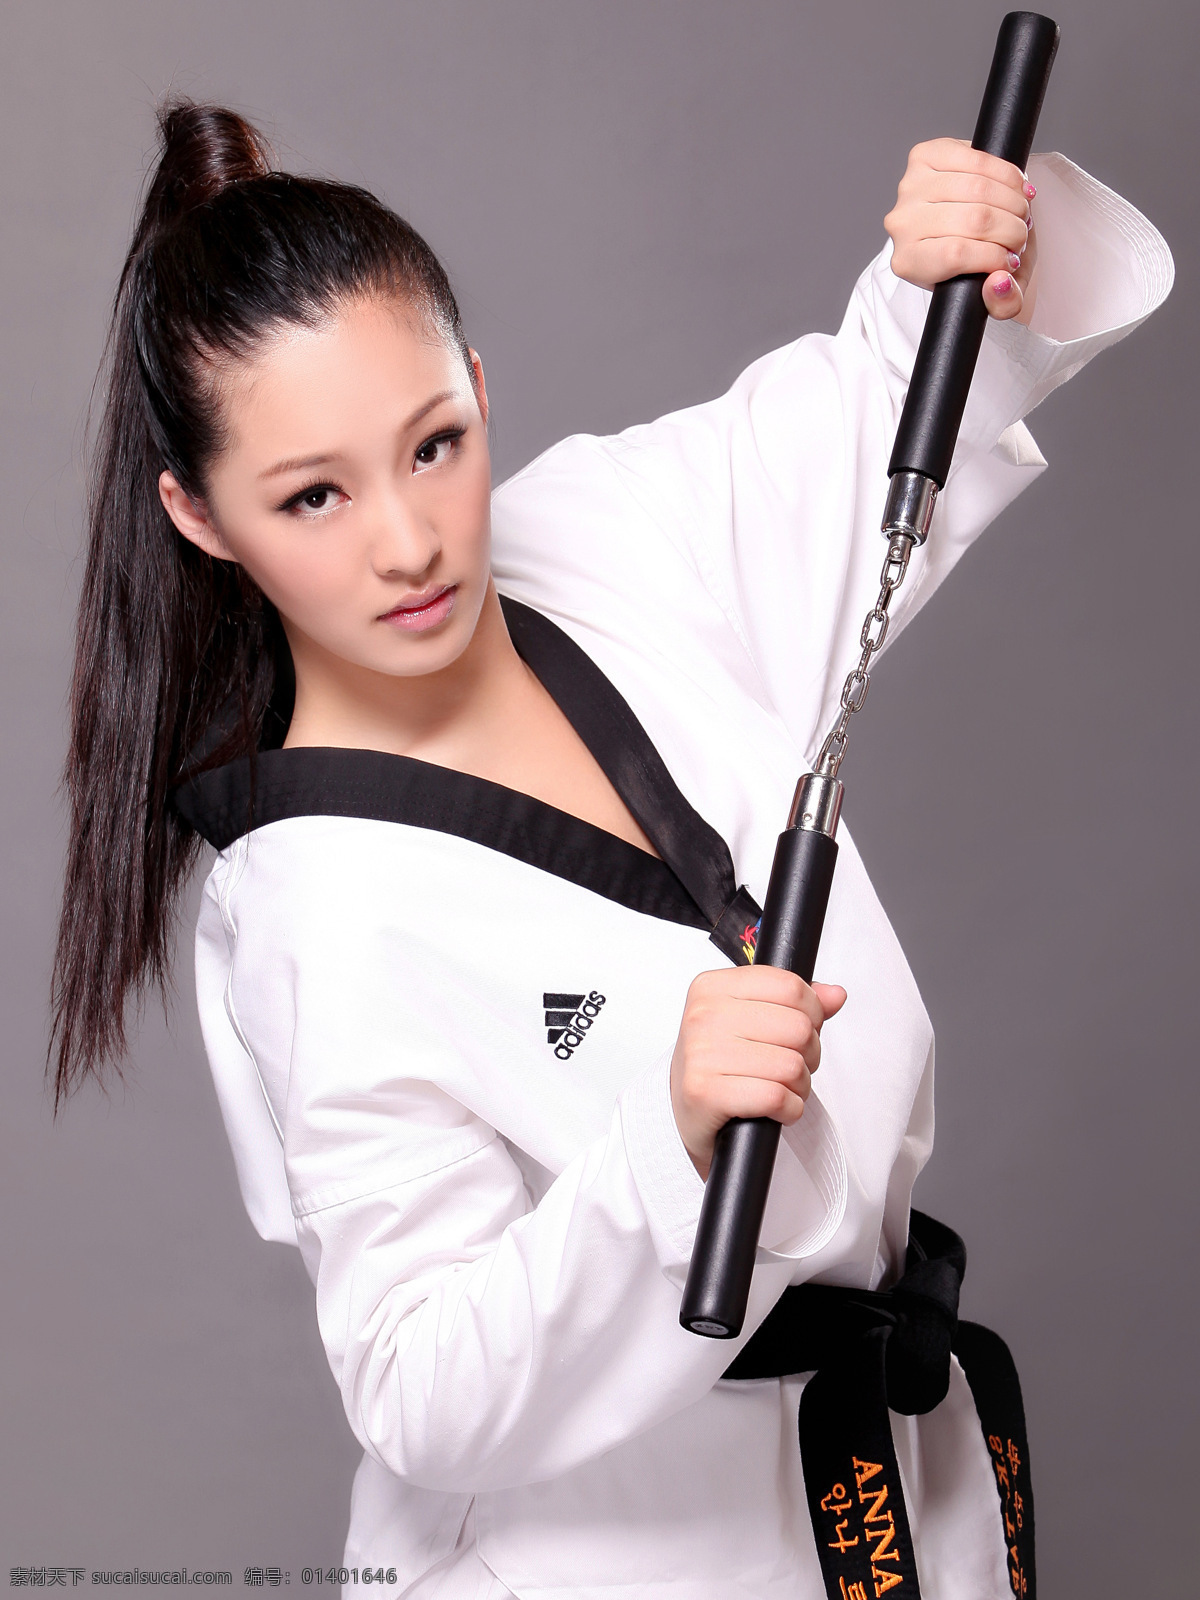 崔安娜 跆拳道 写真 美国 华裔 小姐 冠军 明星偶像 人物图库